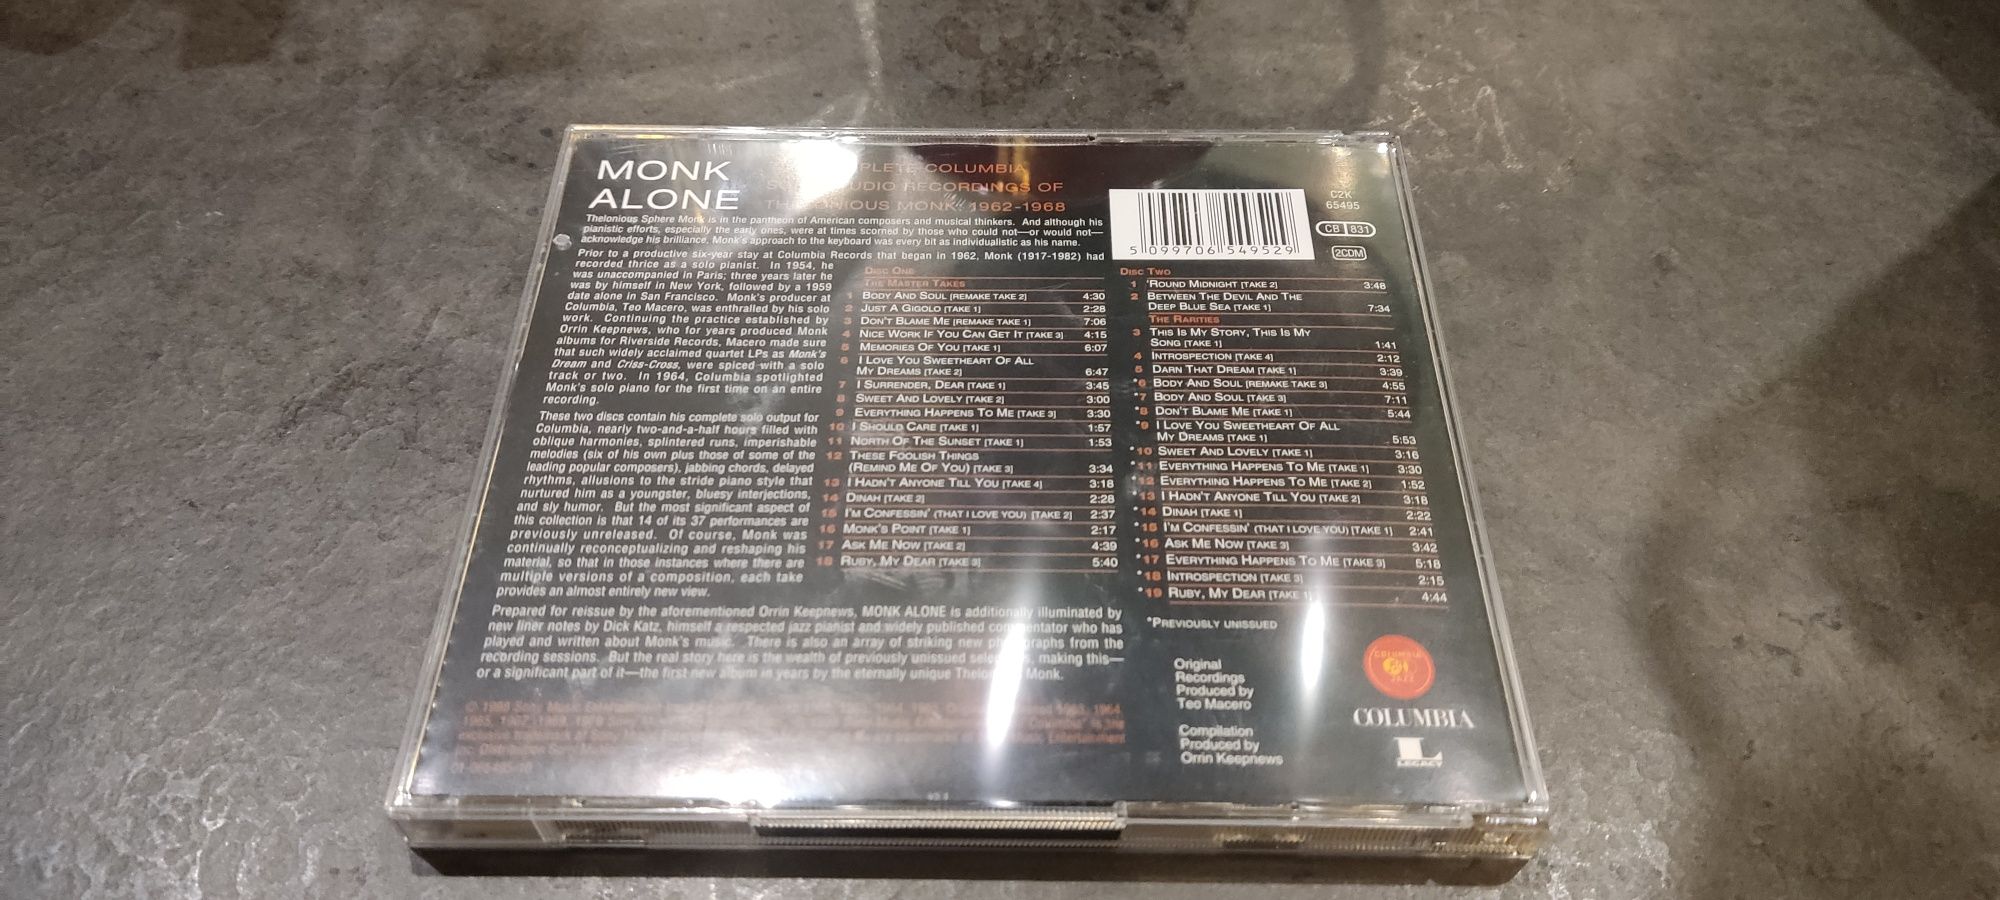 Monk Alone The Complete Columbia Solo Studio Recordings 2cd